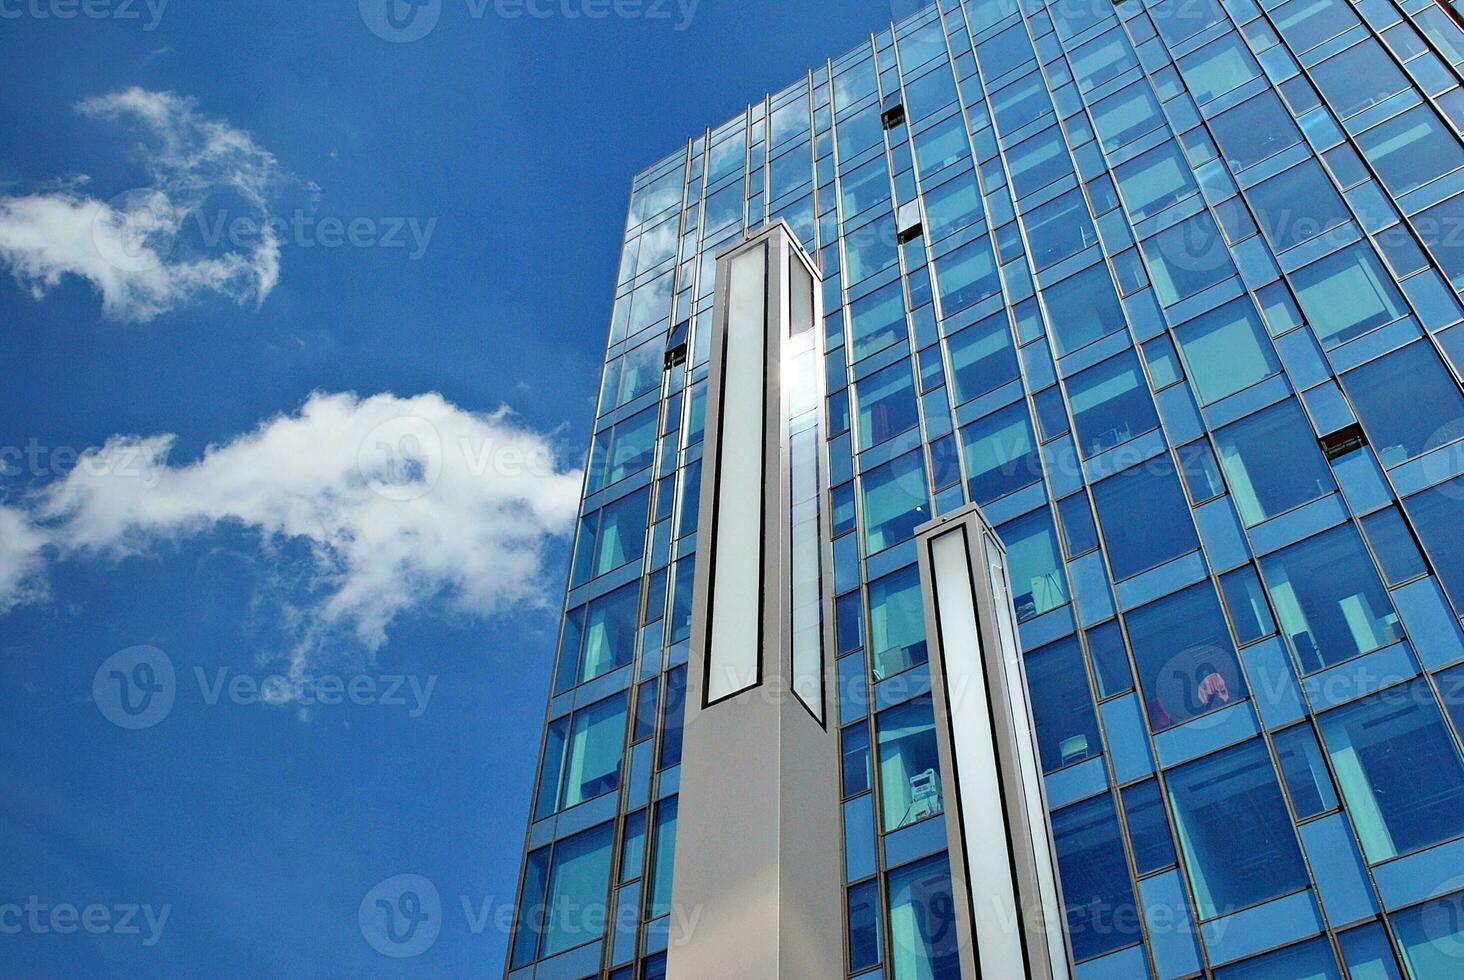 glas gebouw met transparant facade van de gebouw en blauw lucht. structureel glas muur reflecterend blauw lucht. foto